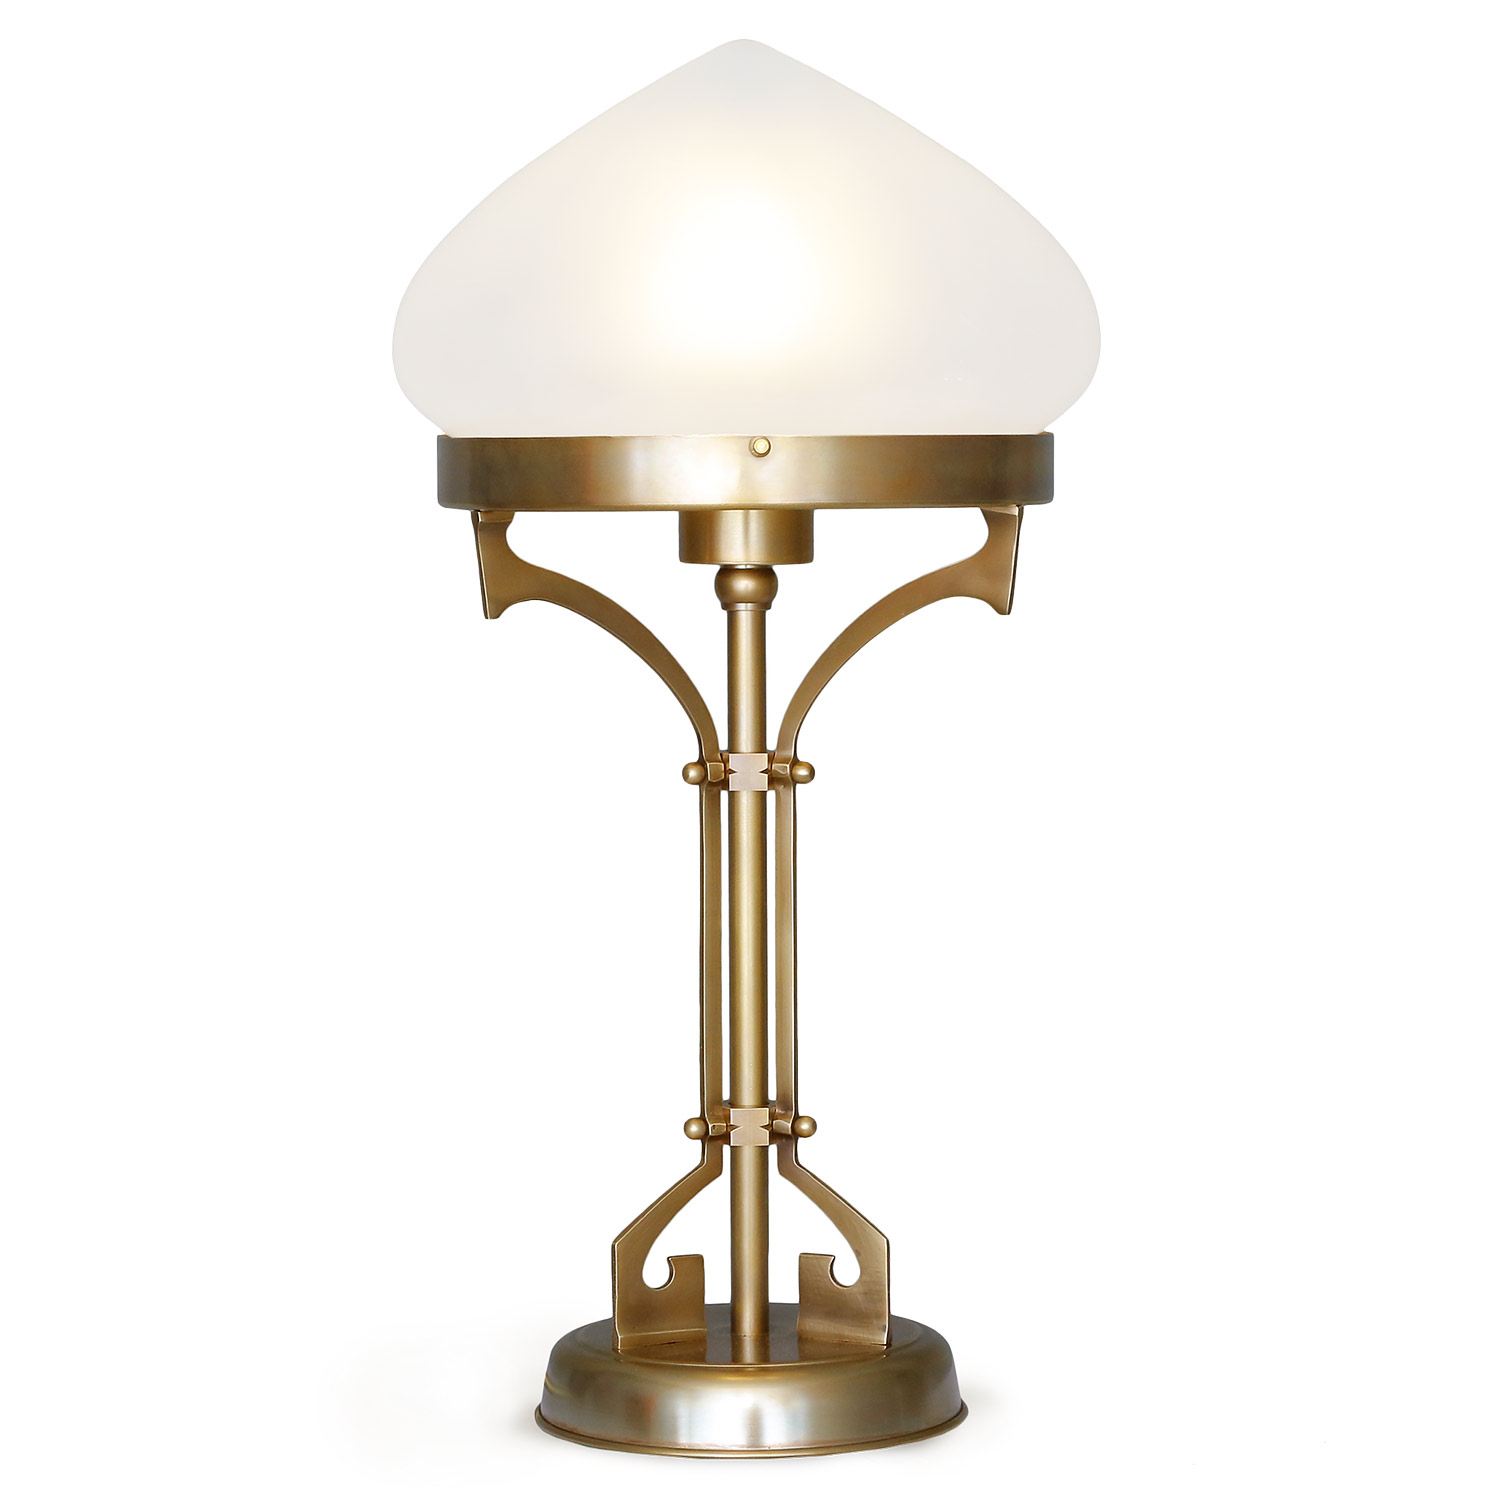 Art Nouveau replica: table lamp PANNONIA